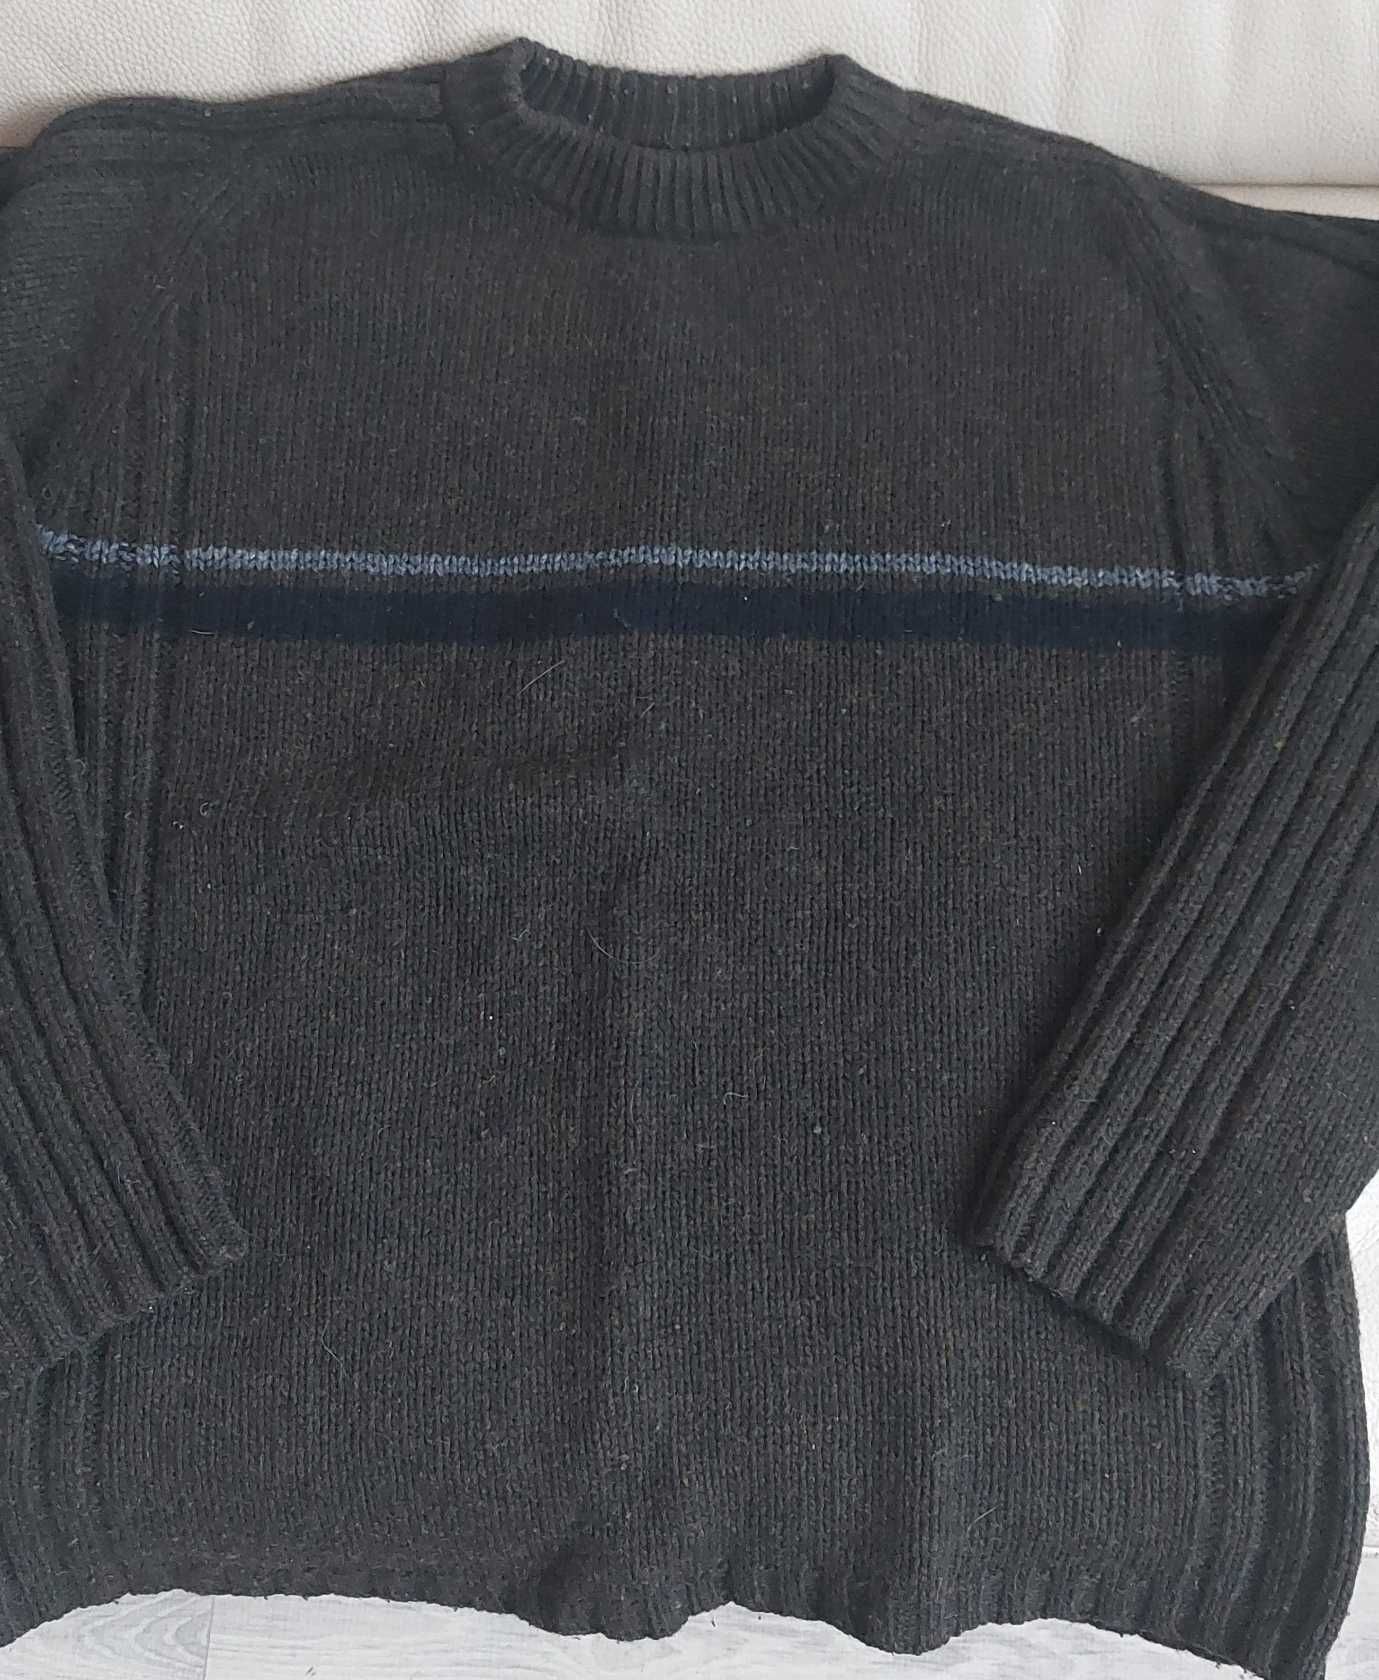 Tatuum, oliwkowy ciepły sweter męski, roz. L; 80% wełny jagnięcej